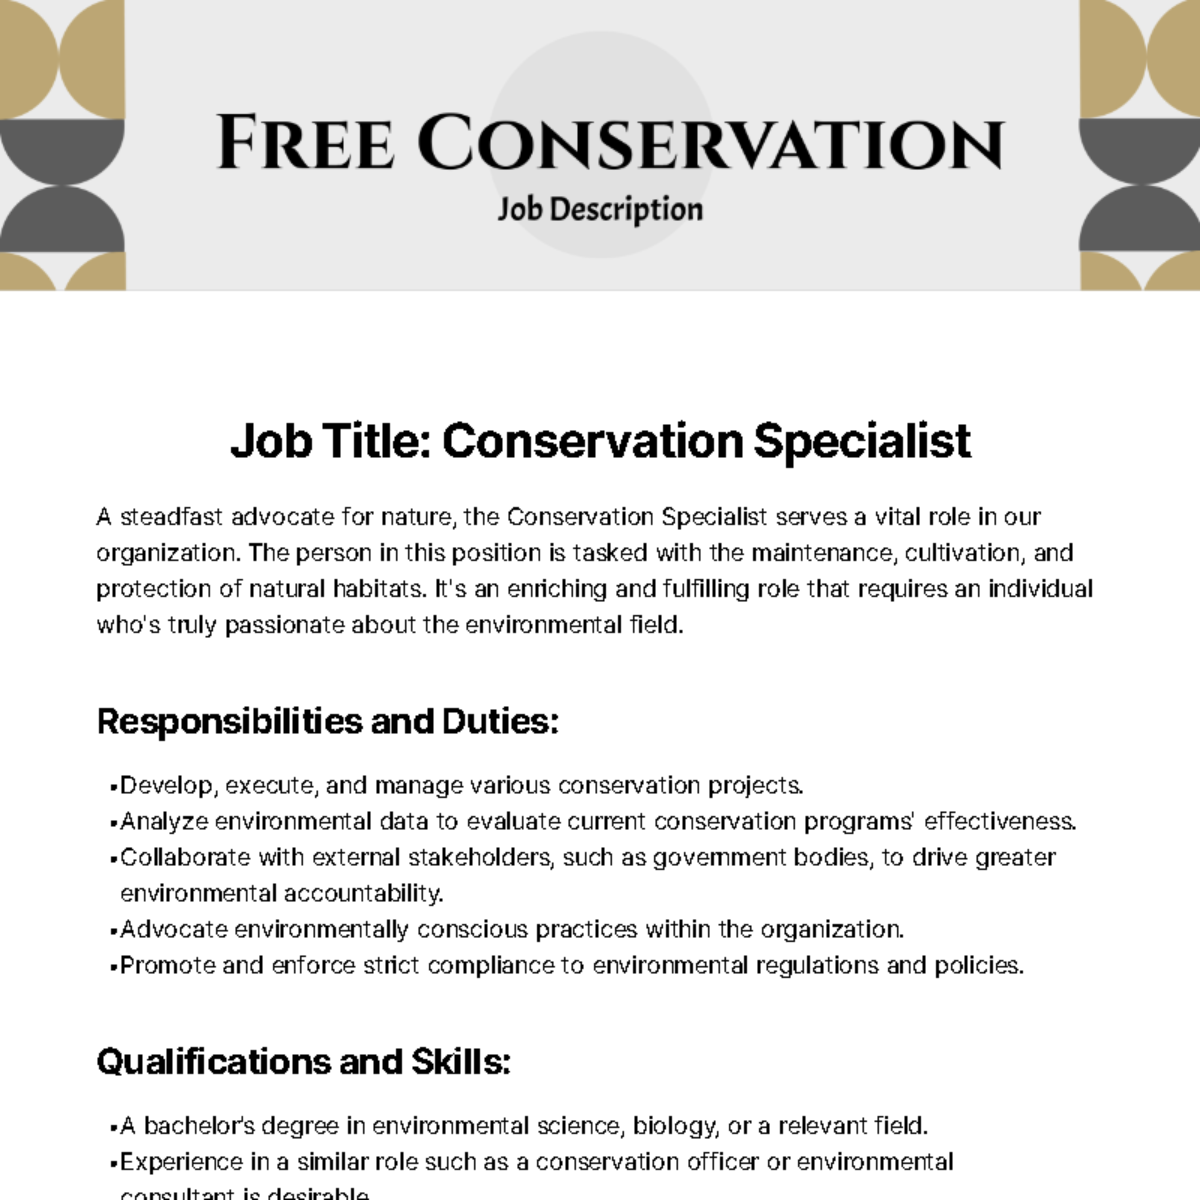 Free Conservation Job Description Template